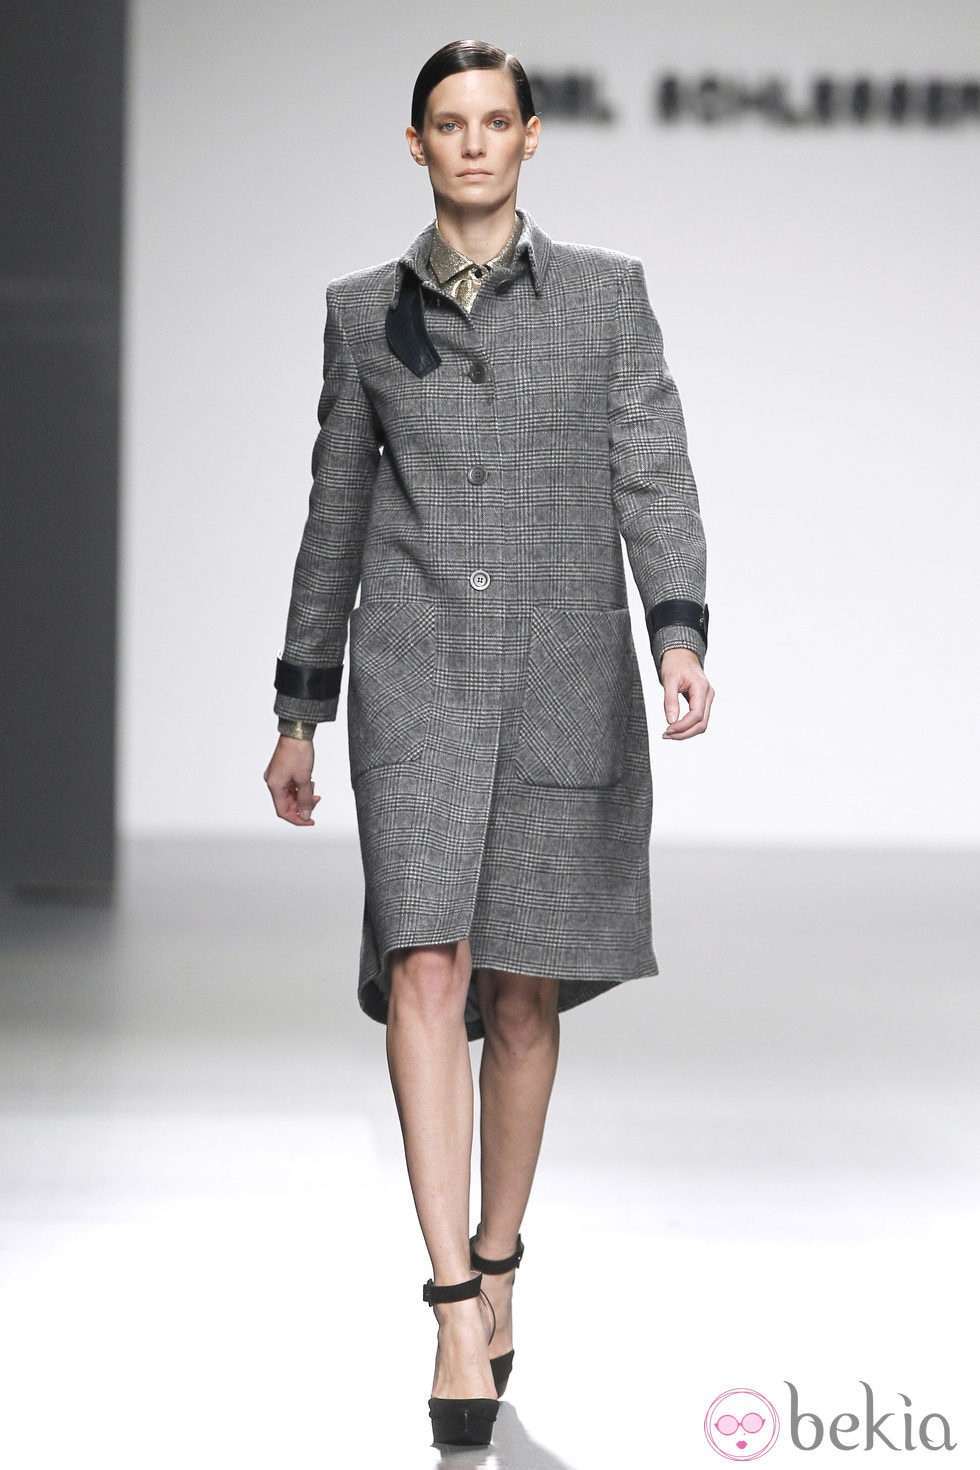 Abrigo gris tartán de la colección otoño/invierno 2012/2013 de Ángel Schlesser